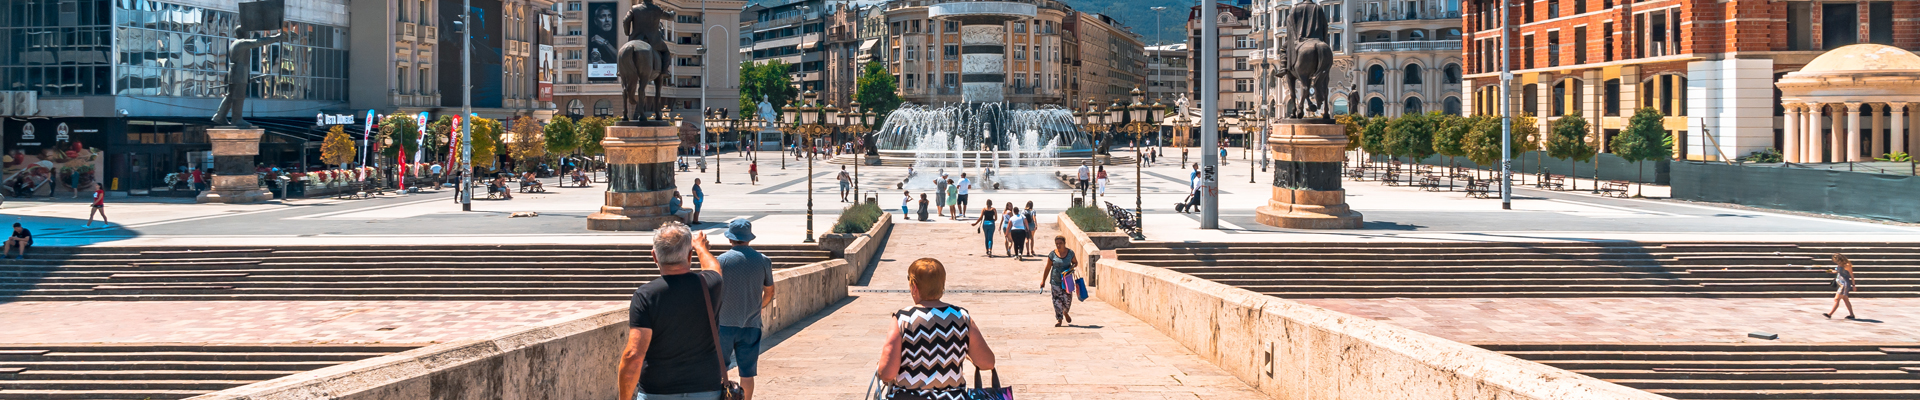 City Center Square in Skopje, Macedonia